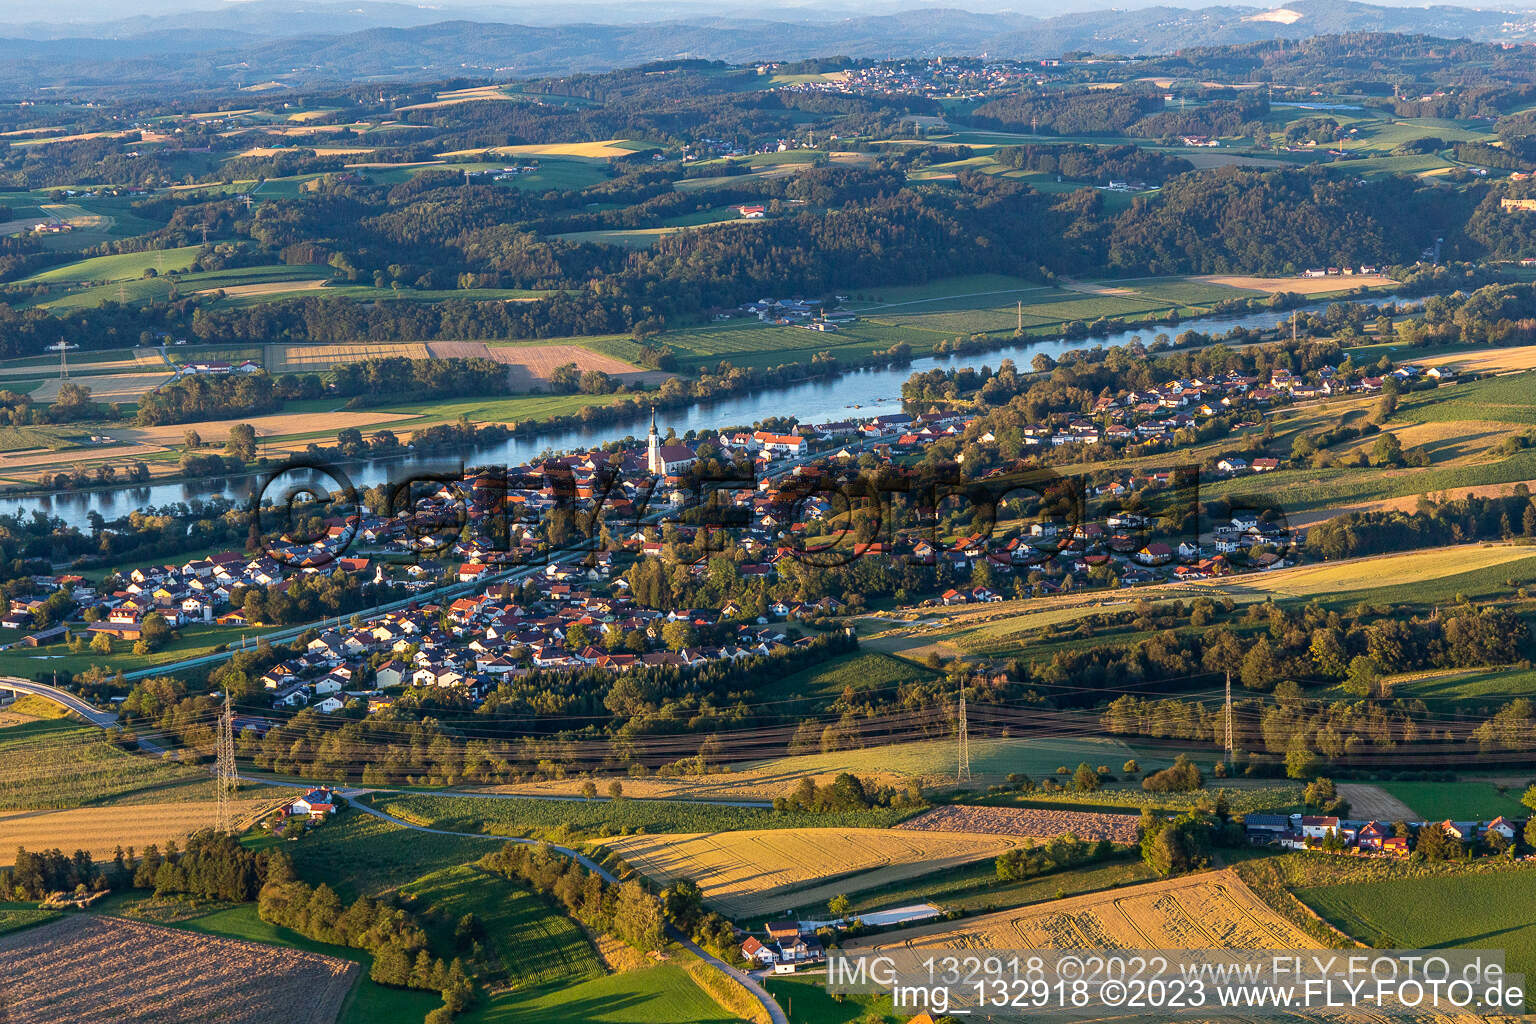 Luftbild von Pleinting in Vilshofen an der Donau im Bundesland Bayern, Deutschland